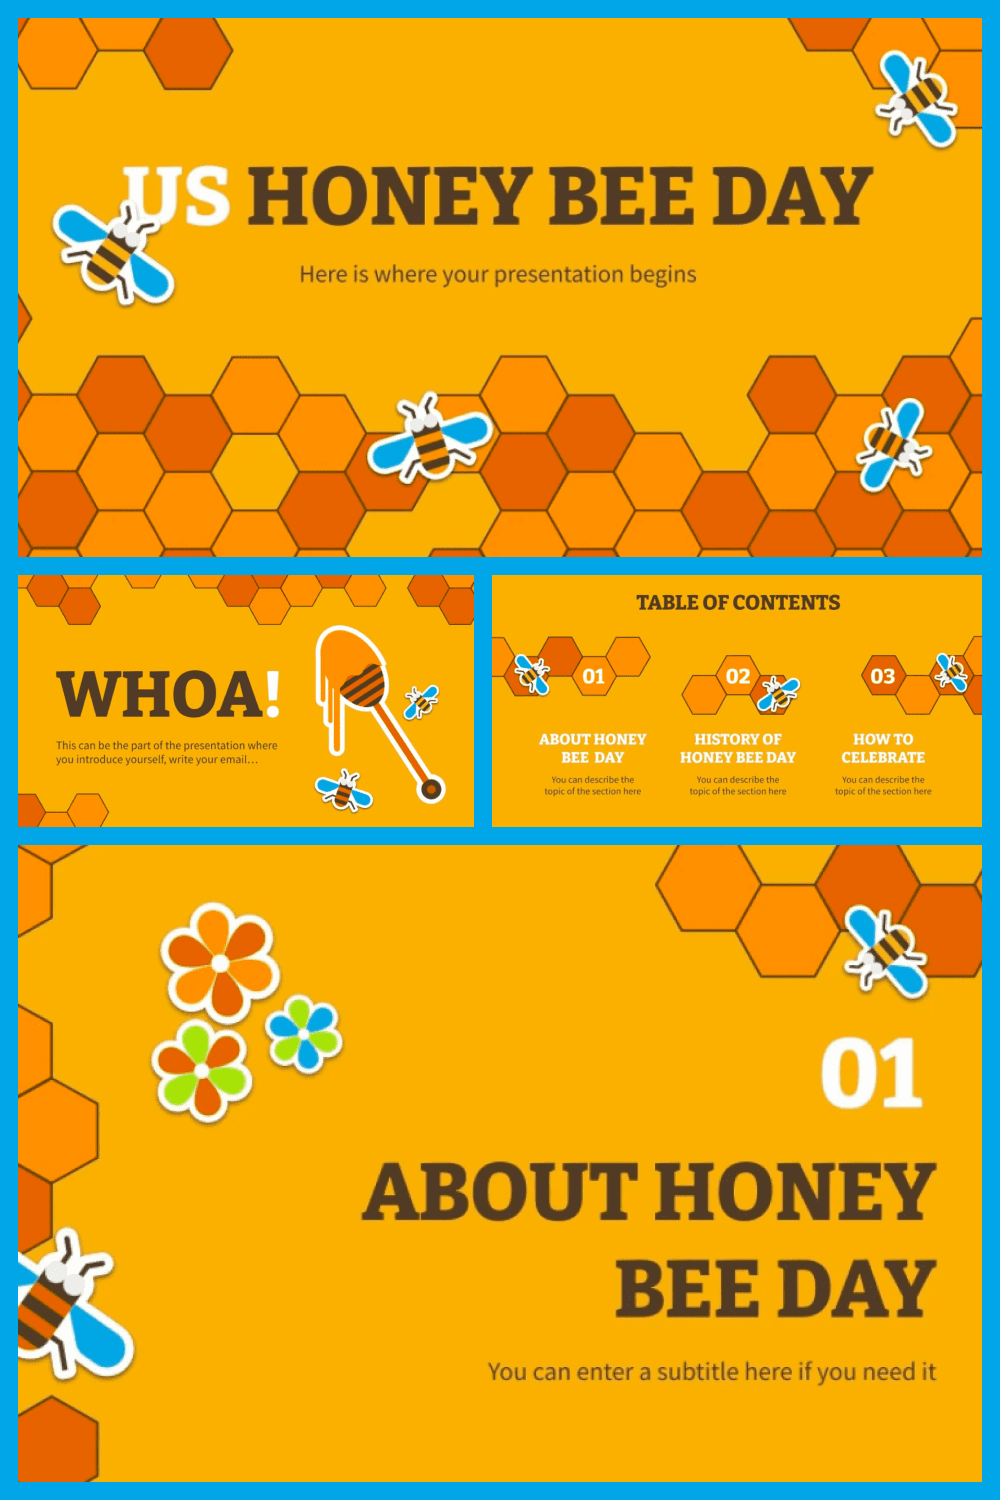 US honey bee day.